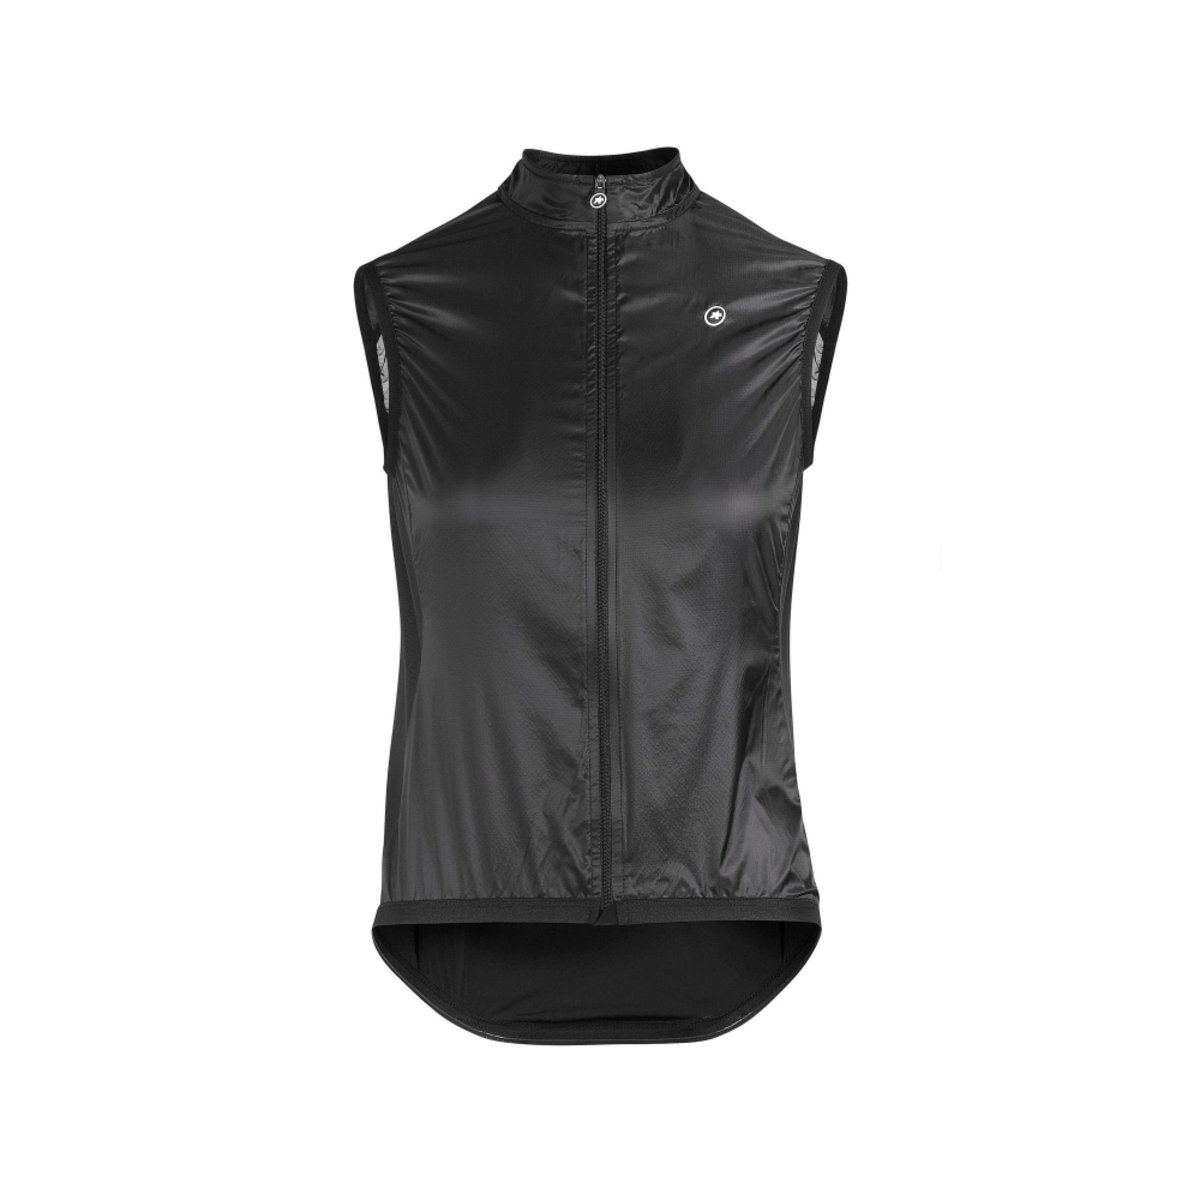 Жилетка ASSOS Uma GT Wind Vest Black Series lady, женская, чорна, XS фото 